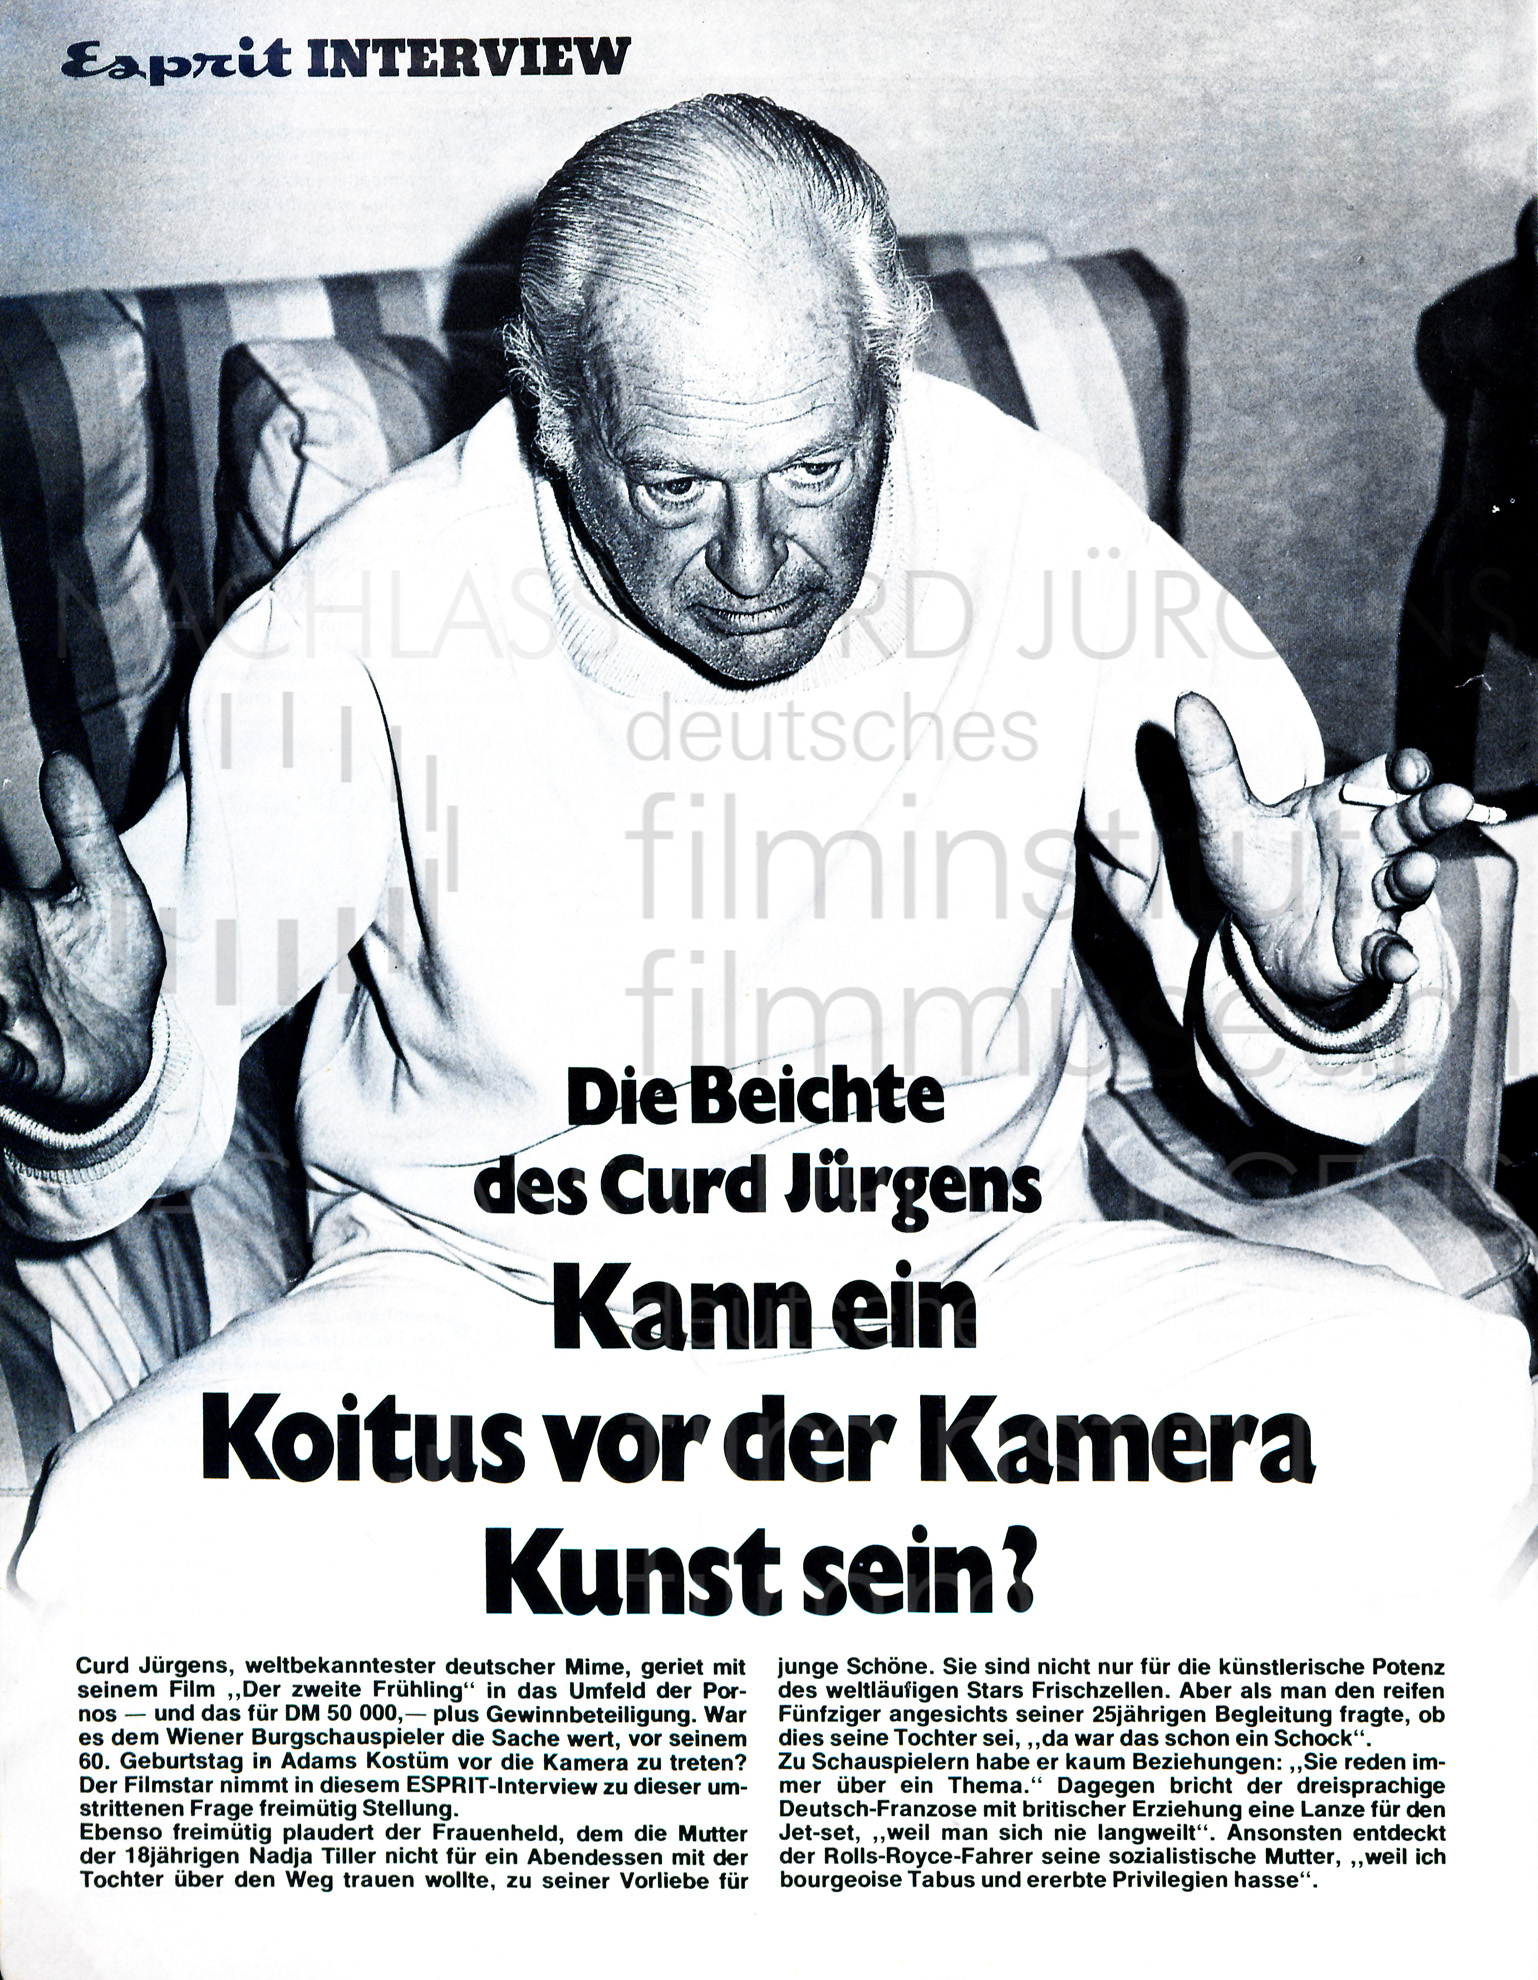 Esprit: "Die Beichte des Curd Jürgens", 1975